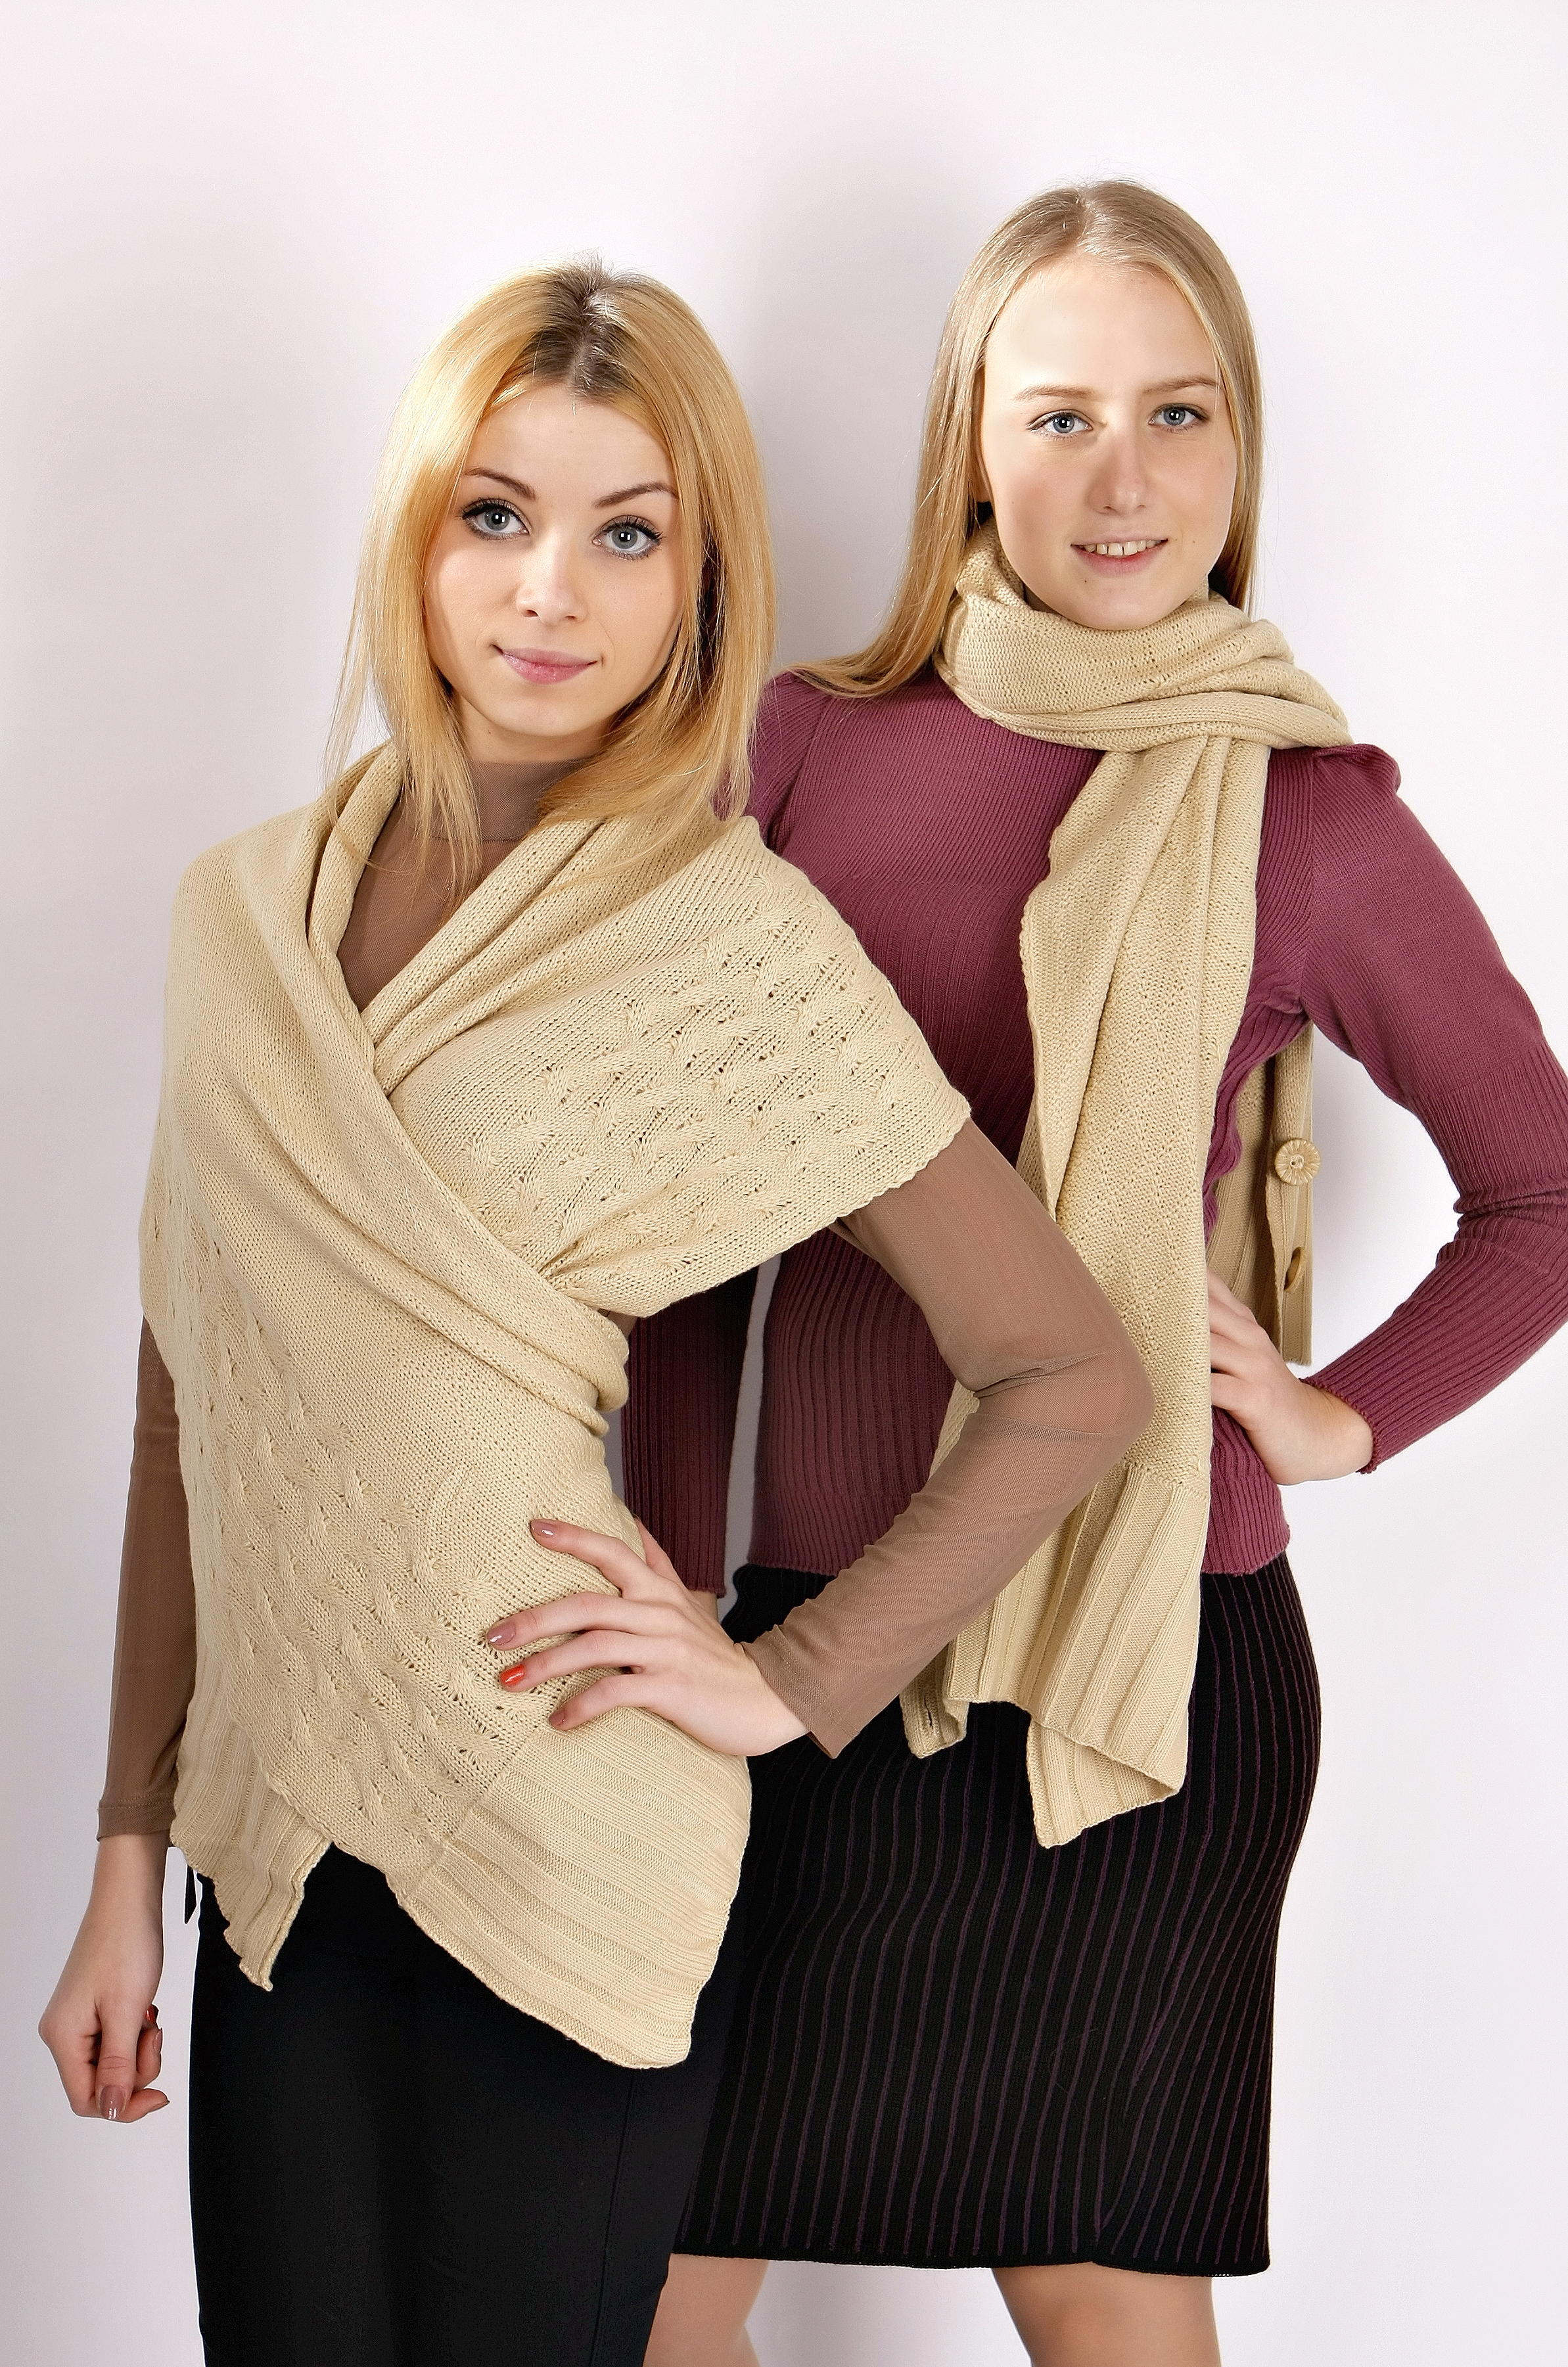 Вязание шарфа спицами - руководство по вязанию шарфа своими руками поэтапно, советы для начинающих, особенности вязания спицами (150 фото)